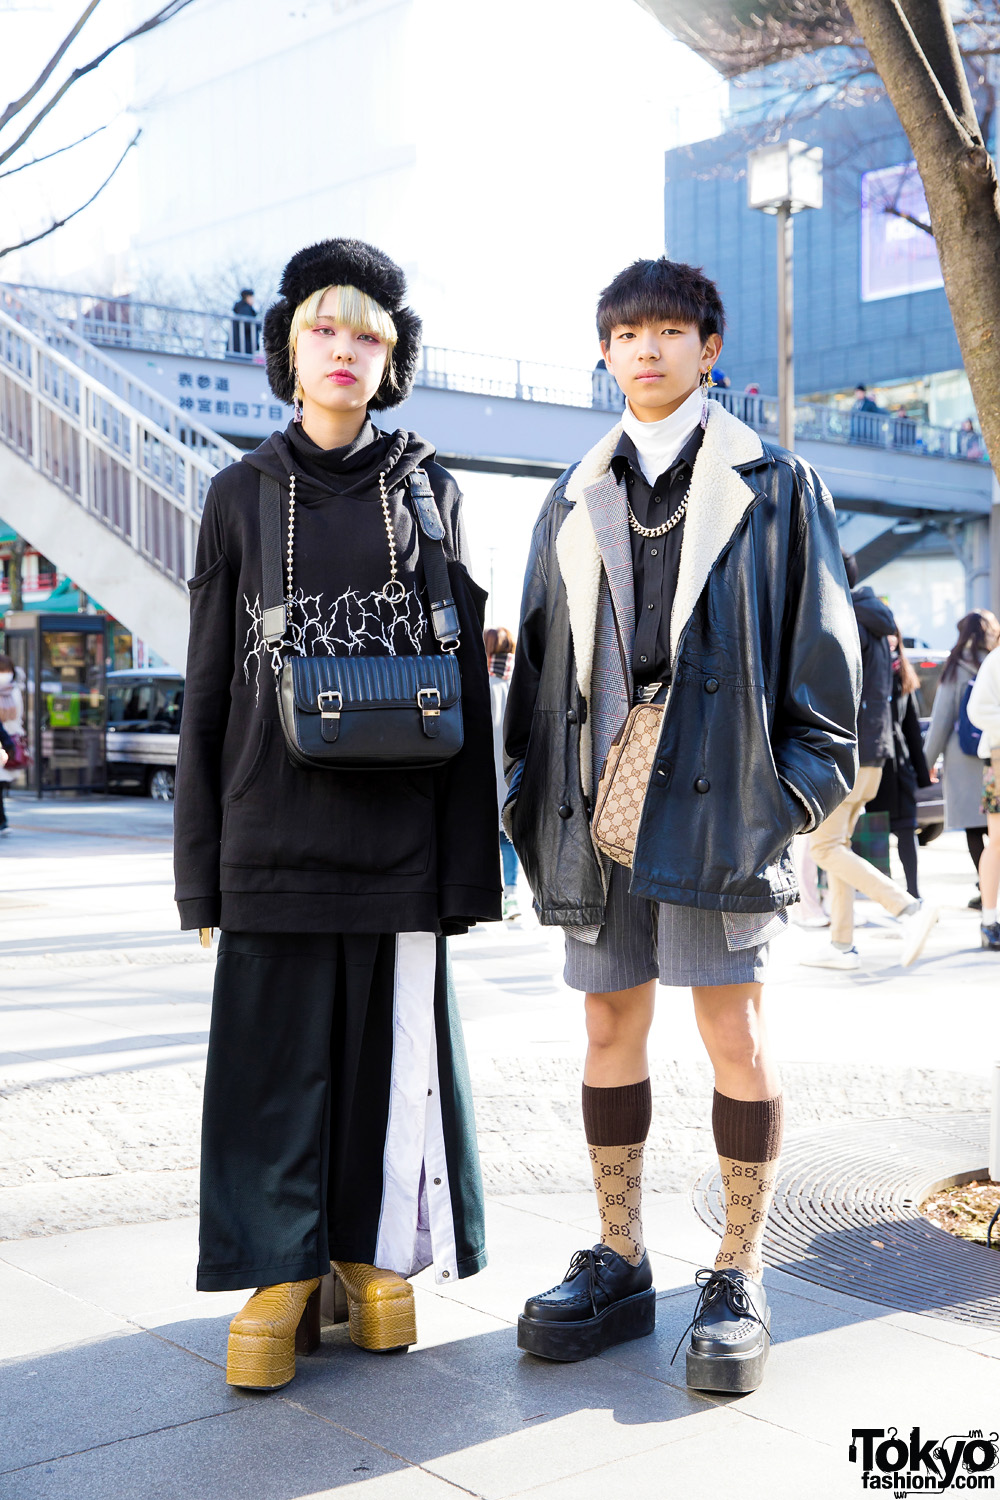 Harajuku Street Fashion w/ BERCERK, London Boots, M.Y.O.B., Gucci, Yosuke & L.H.P.